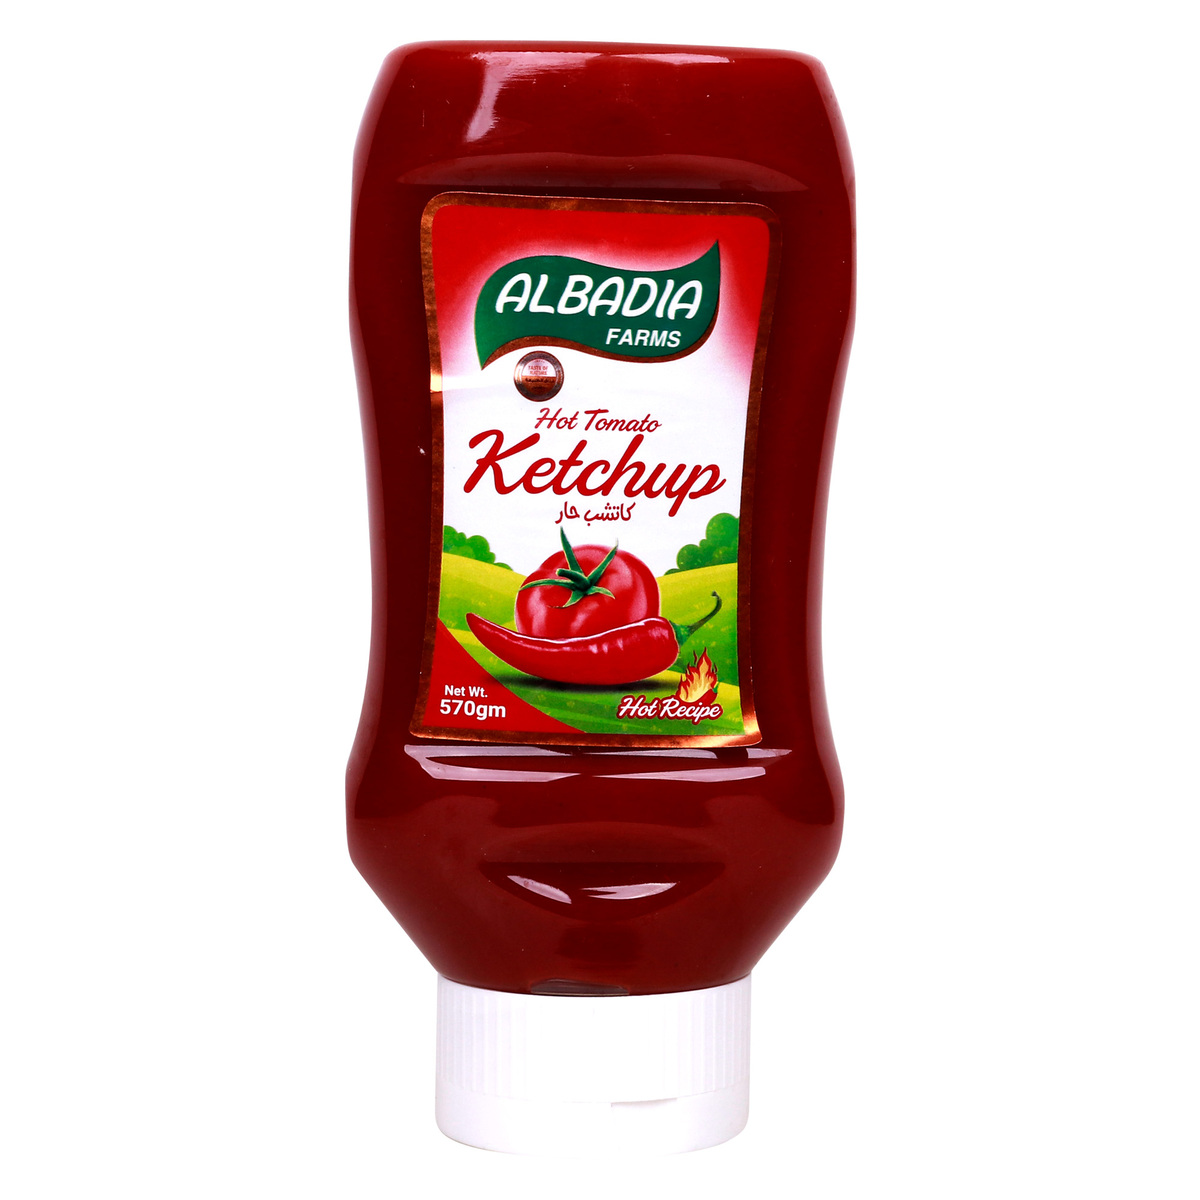 Albadia Hot Tomato Ketchup 570 g